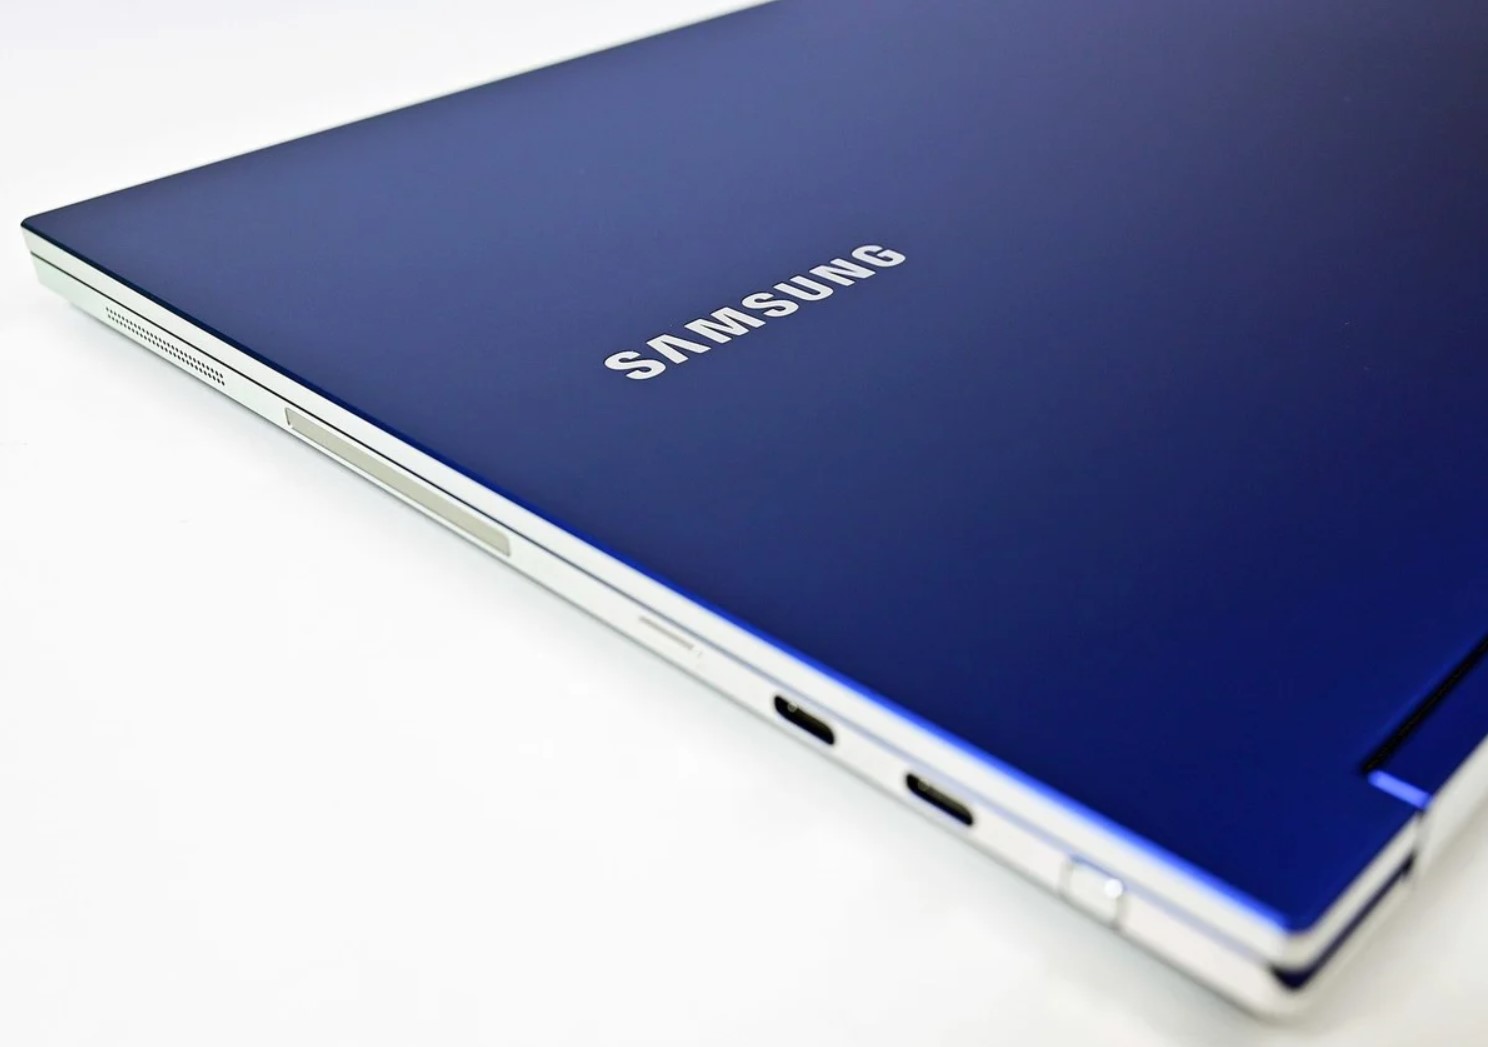 Η Samsung λέγεται πως θα λανσάρει Windows 10 laptop με επεξεργαστή Exynos και γραφικά AMD